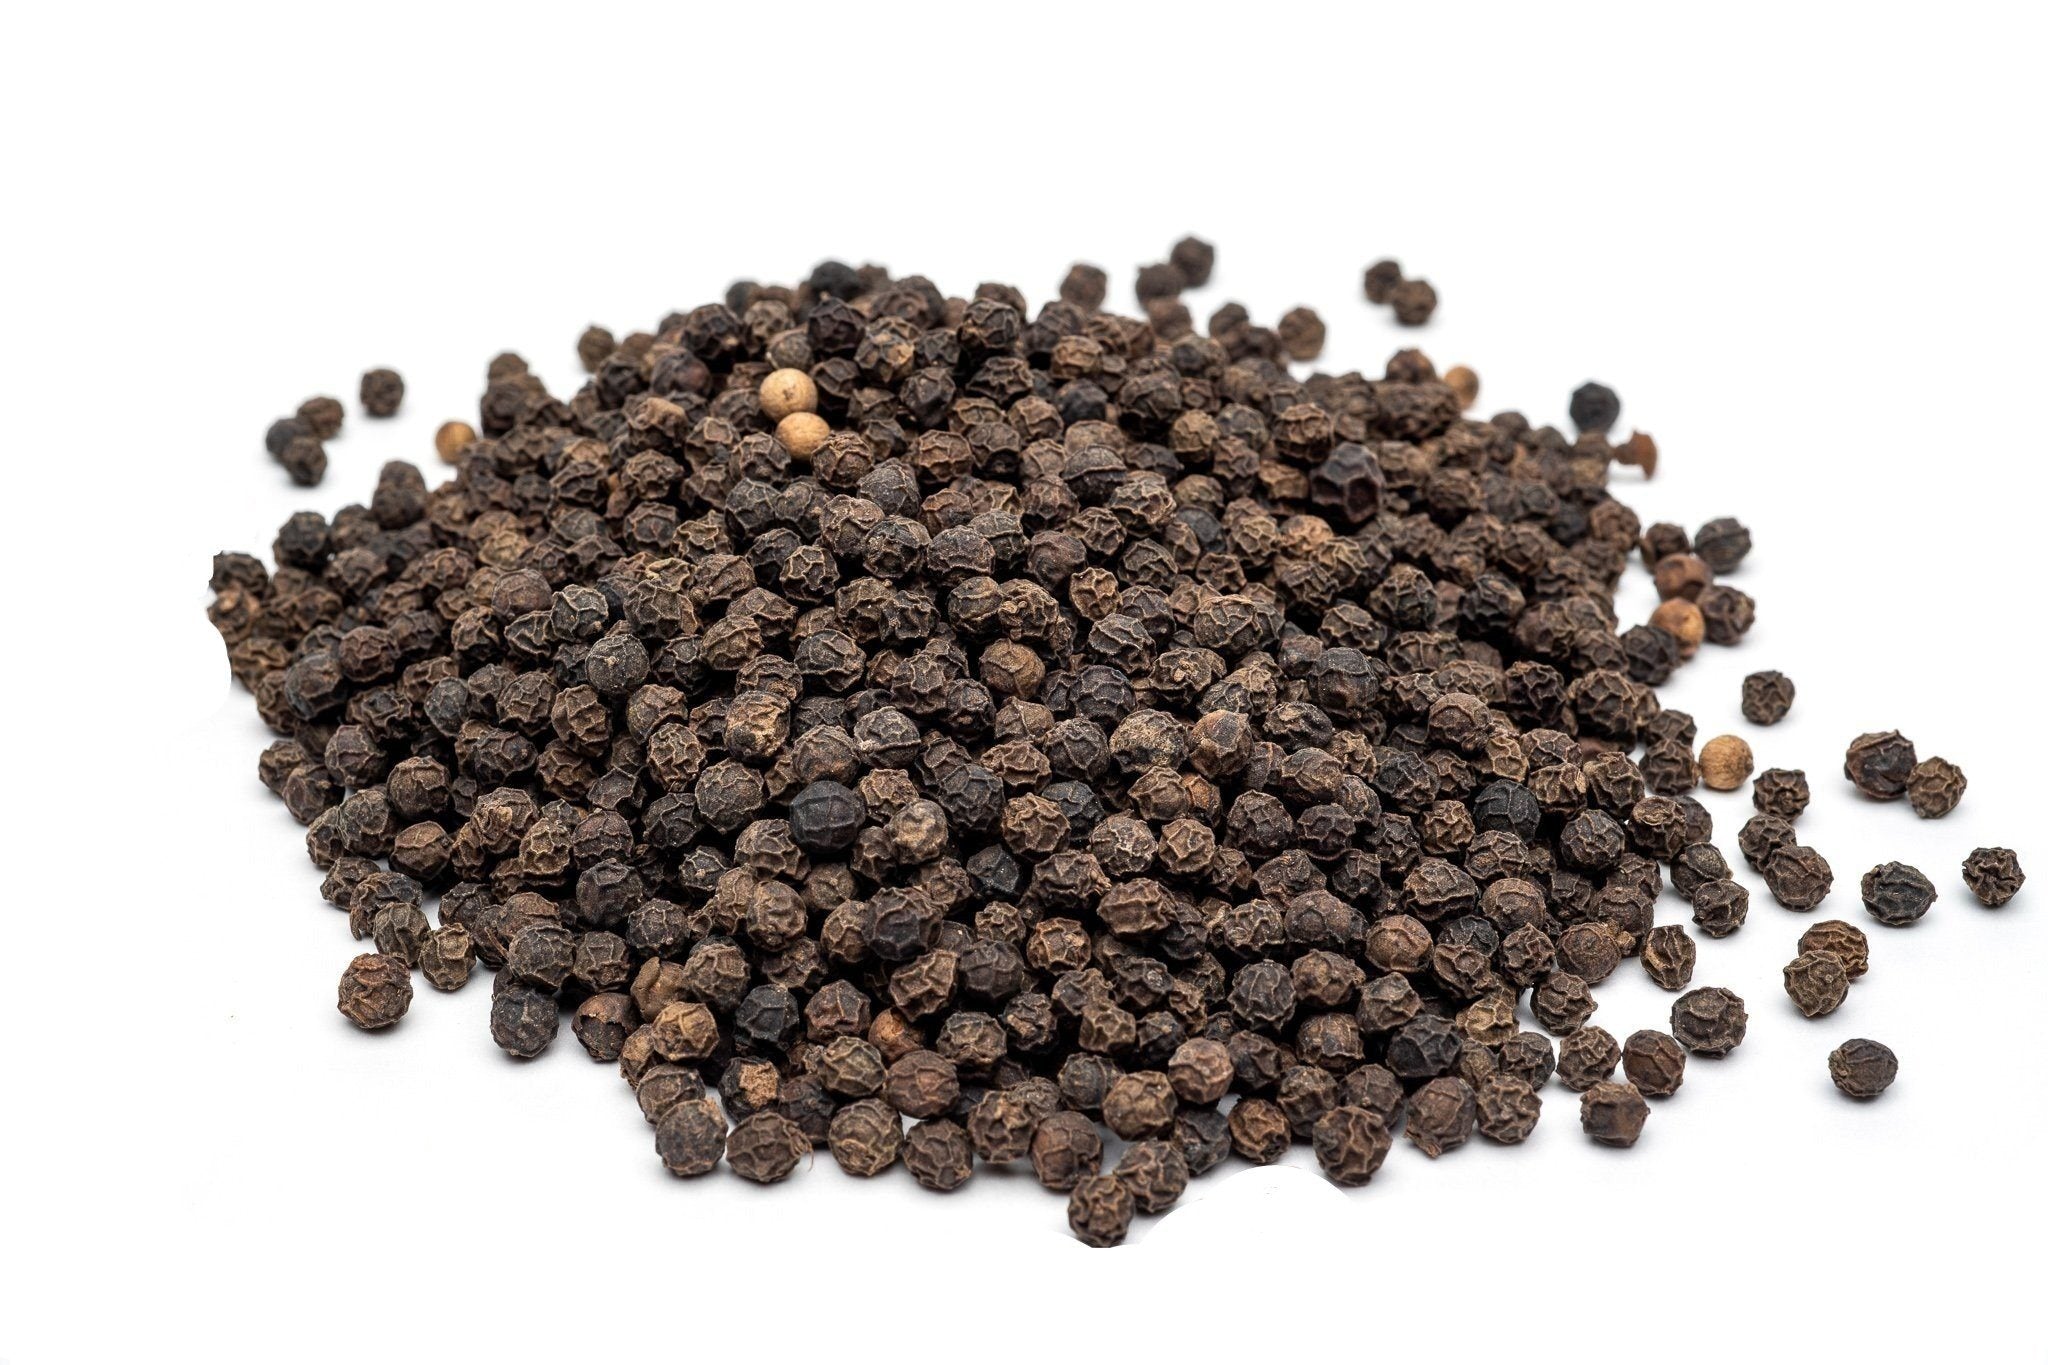 La Campagnola Especias Pimienta Negra En Grano Black Pepper Whole Corns, 25  g / 0.88 oz zipper